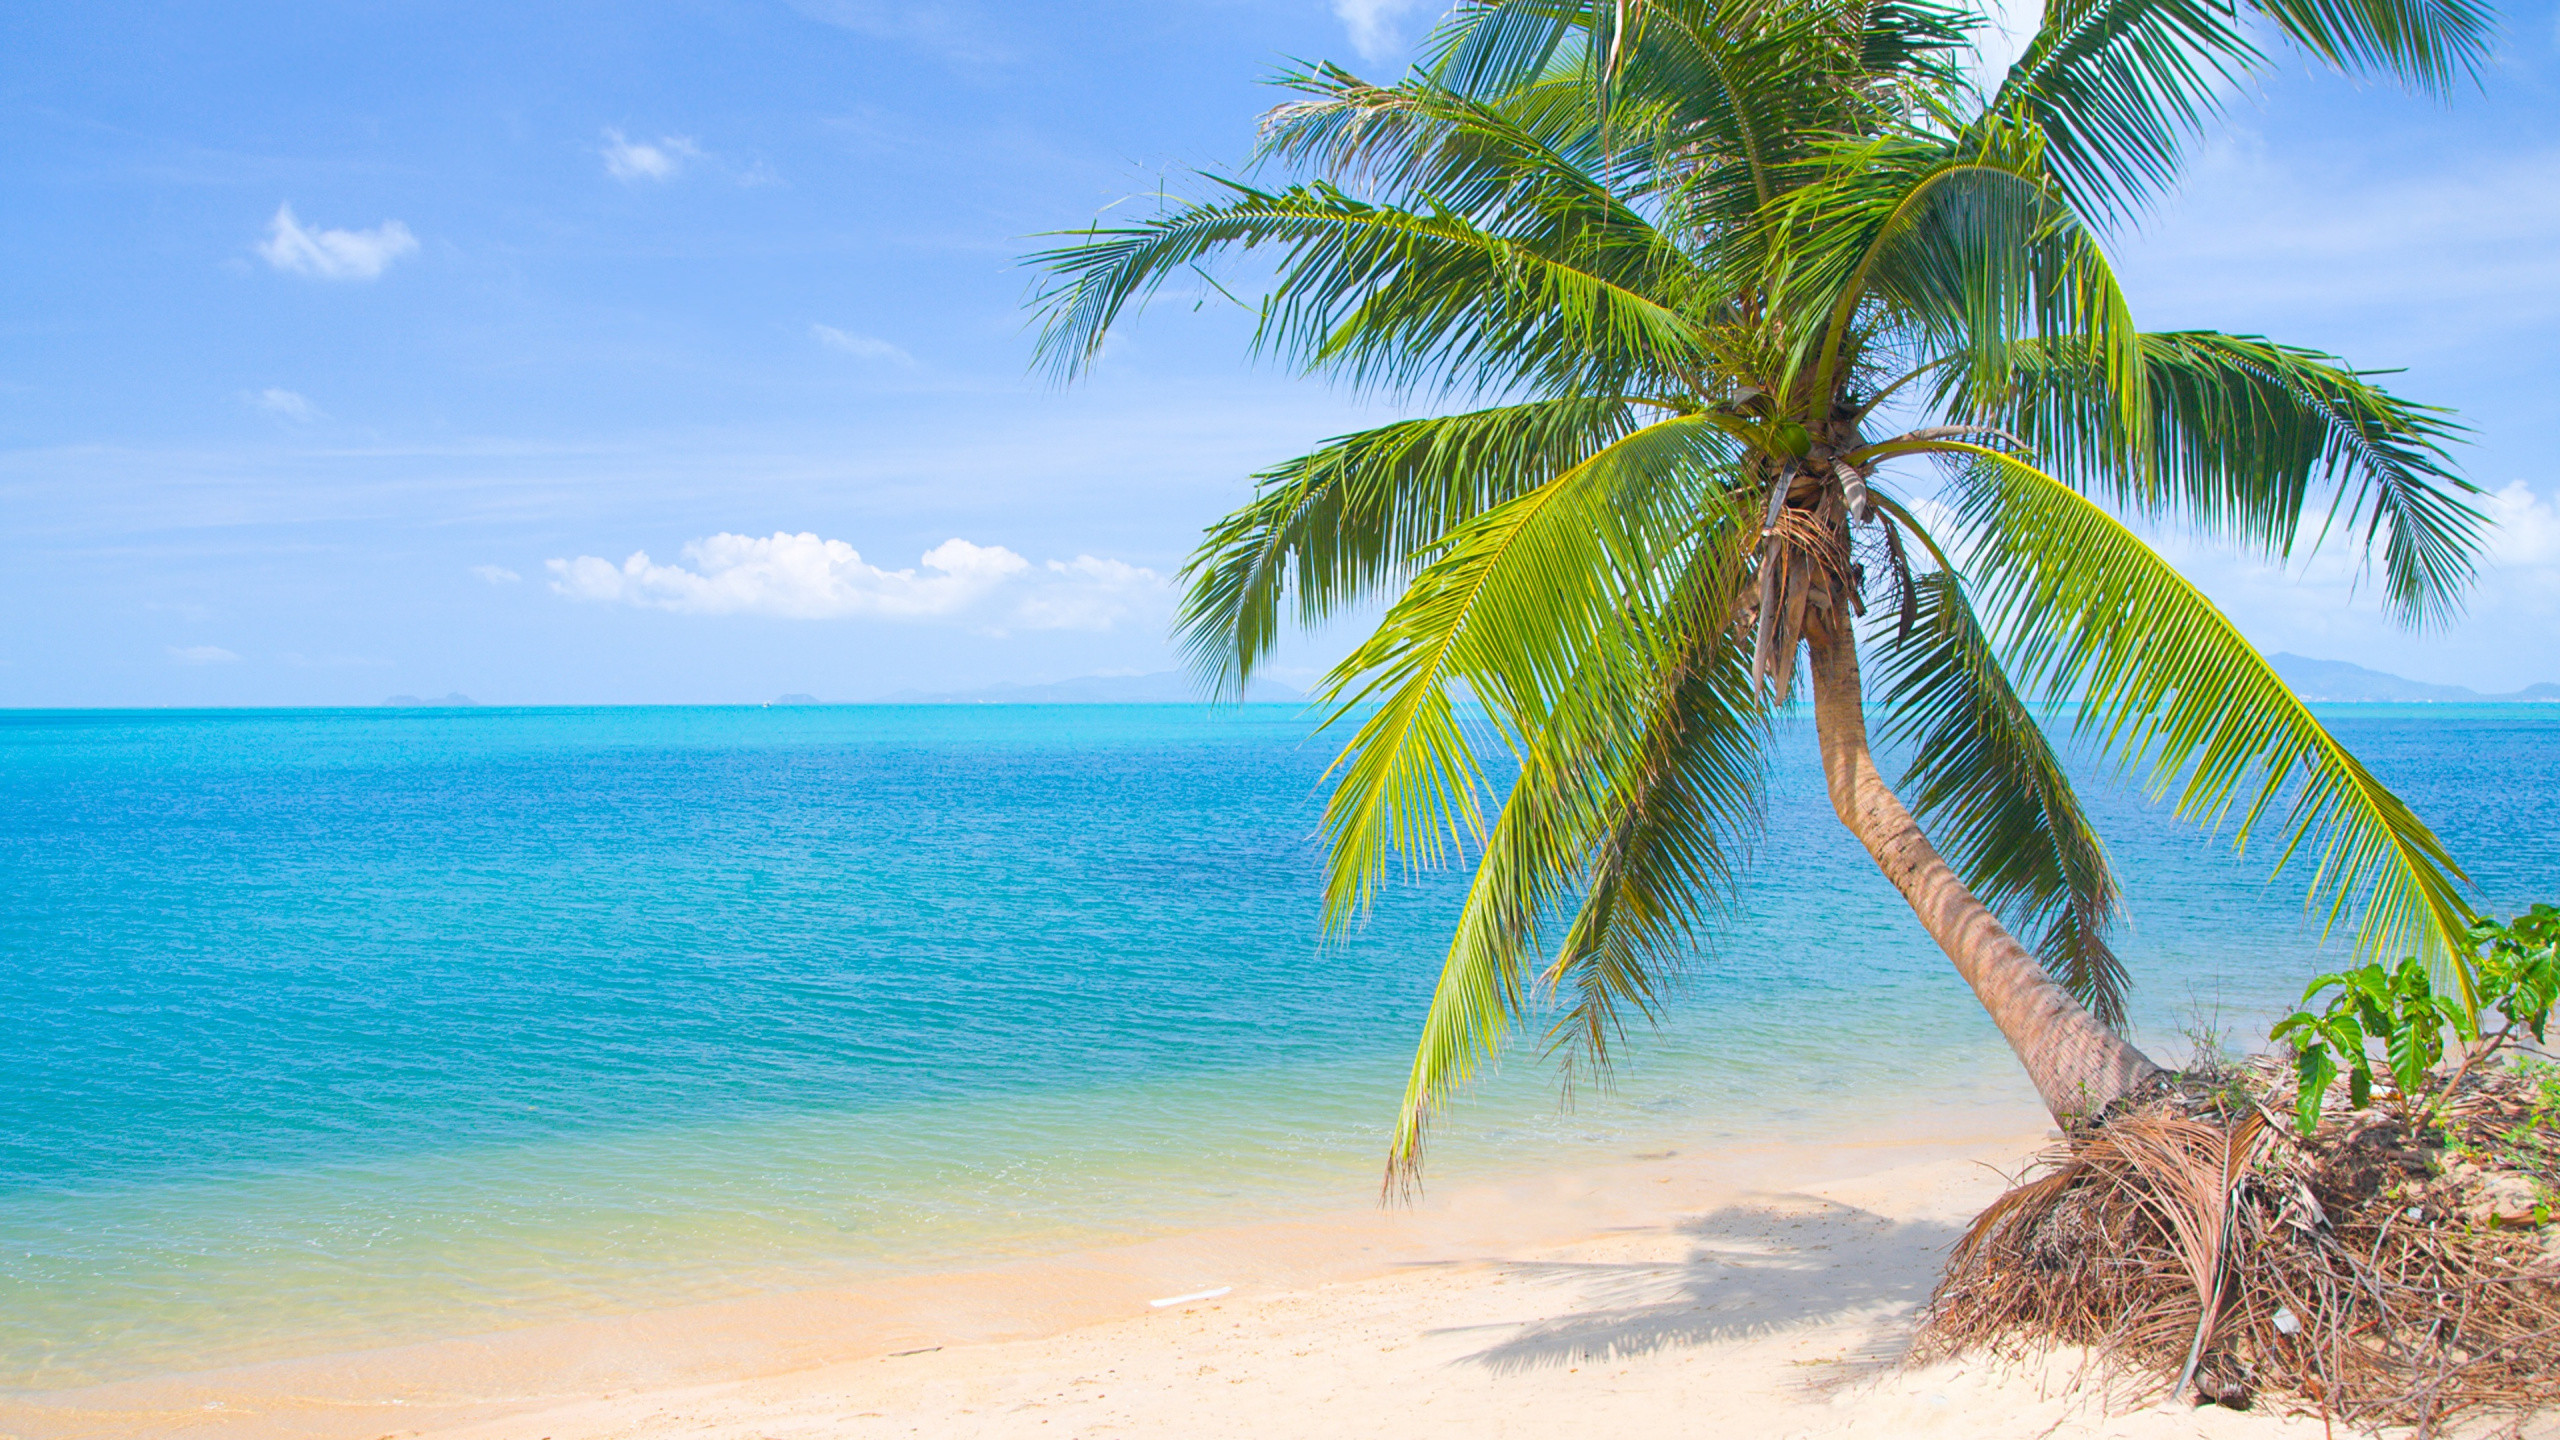 棕榈树, 热带地区, 加勒比, 大海, 岸边 壁纸 2560x1440 允许